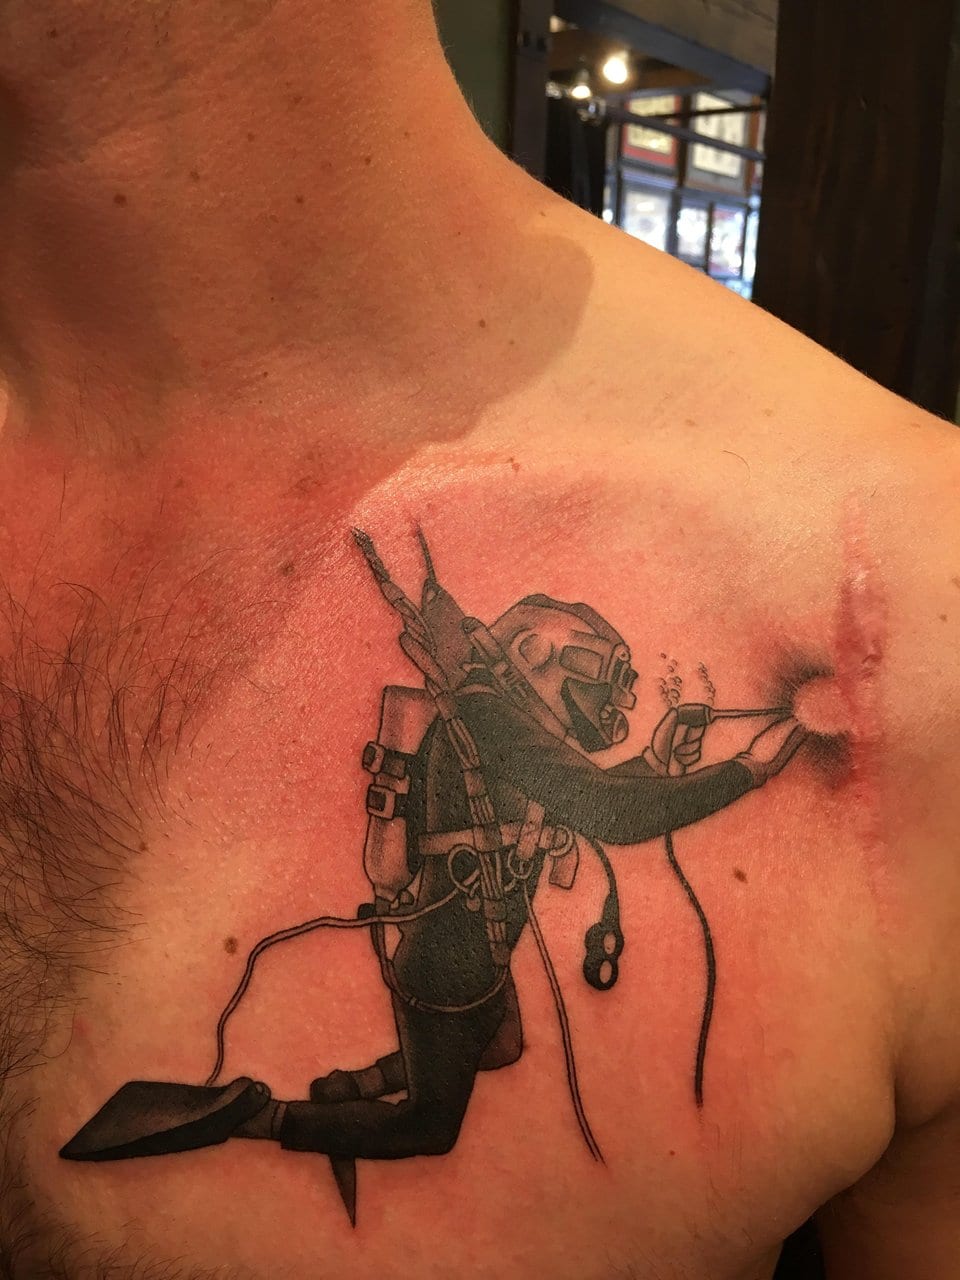 Aquí hay un tatuaje de un soldador submarino que cierra un desgarro en el hombro de esta persona. Parece que se ha sometido a algún tipo de cirugía del hombro, pero actualmente está siendo reparado.